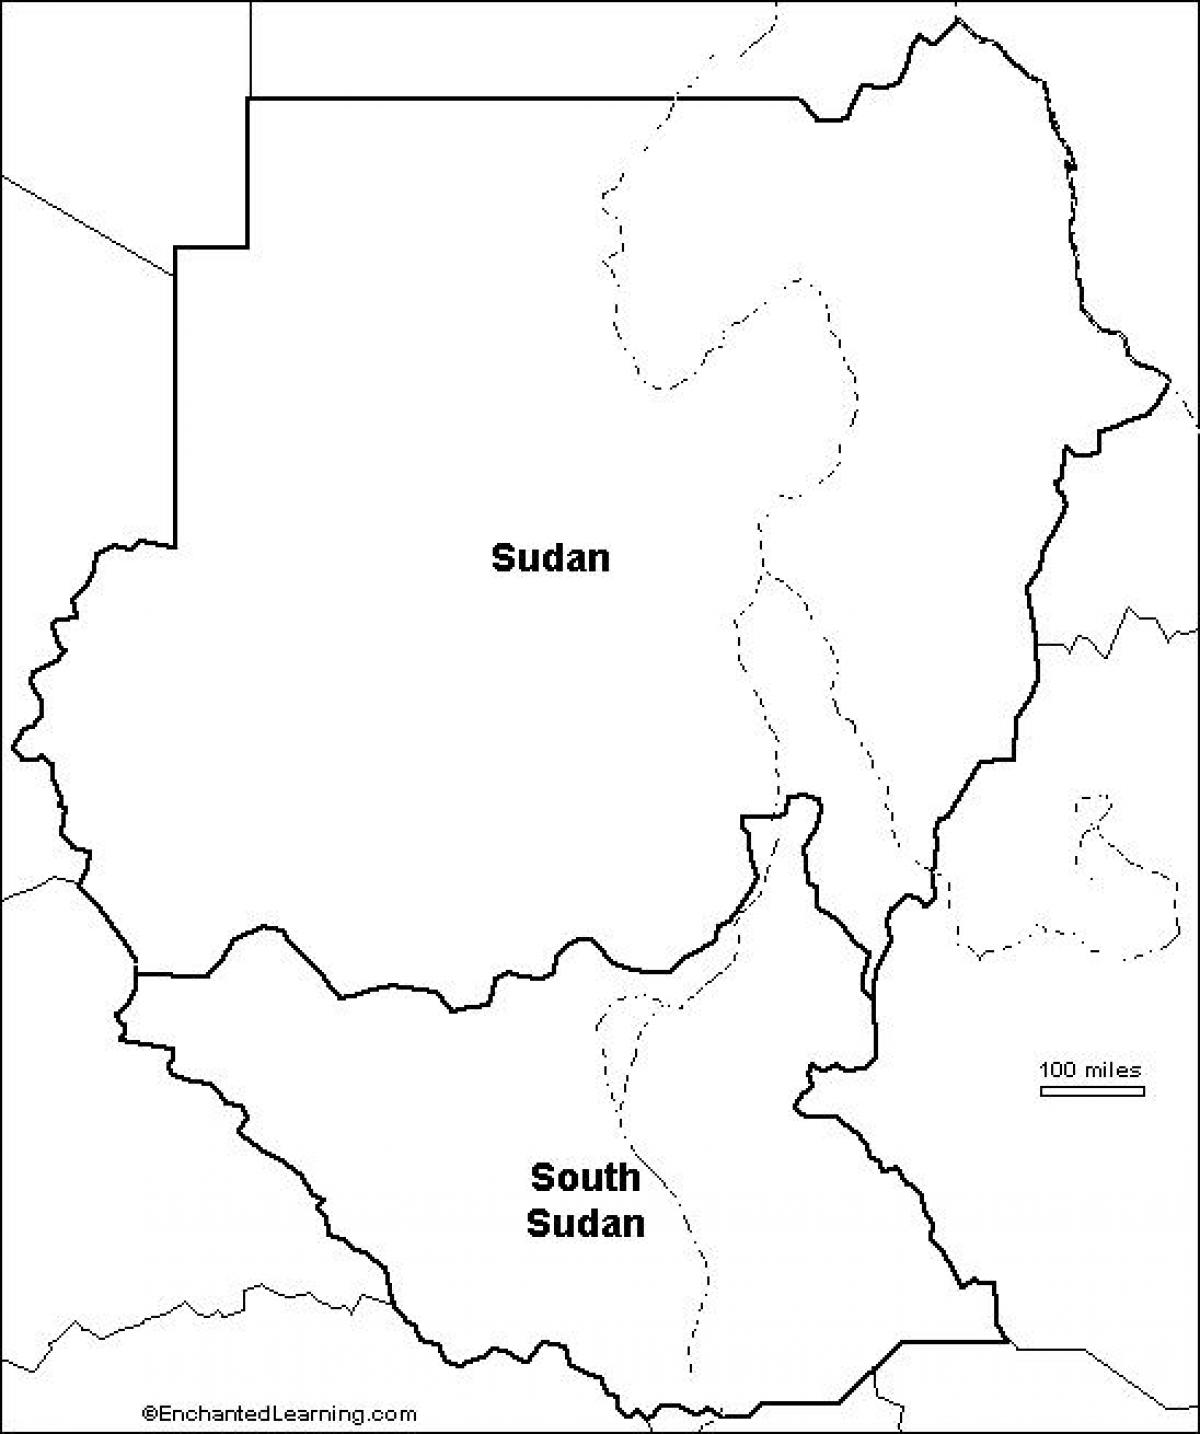 Zemljevid Sudan prazno